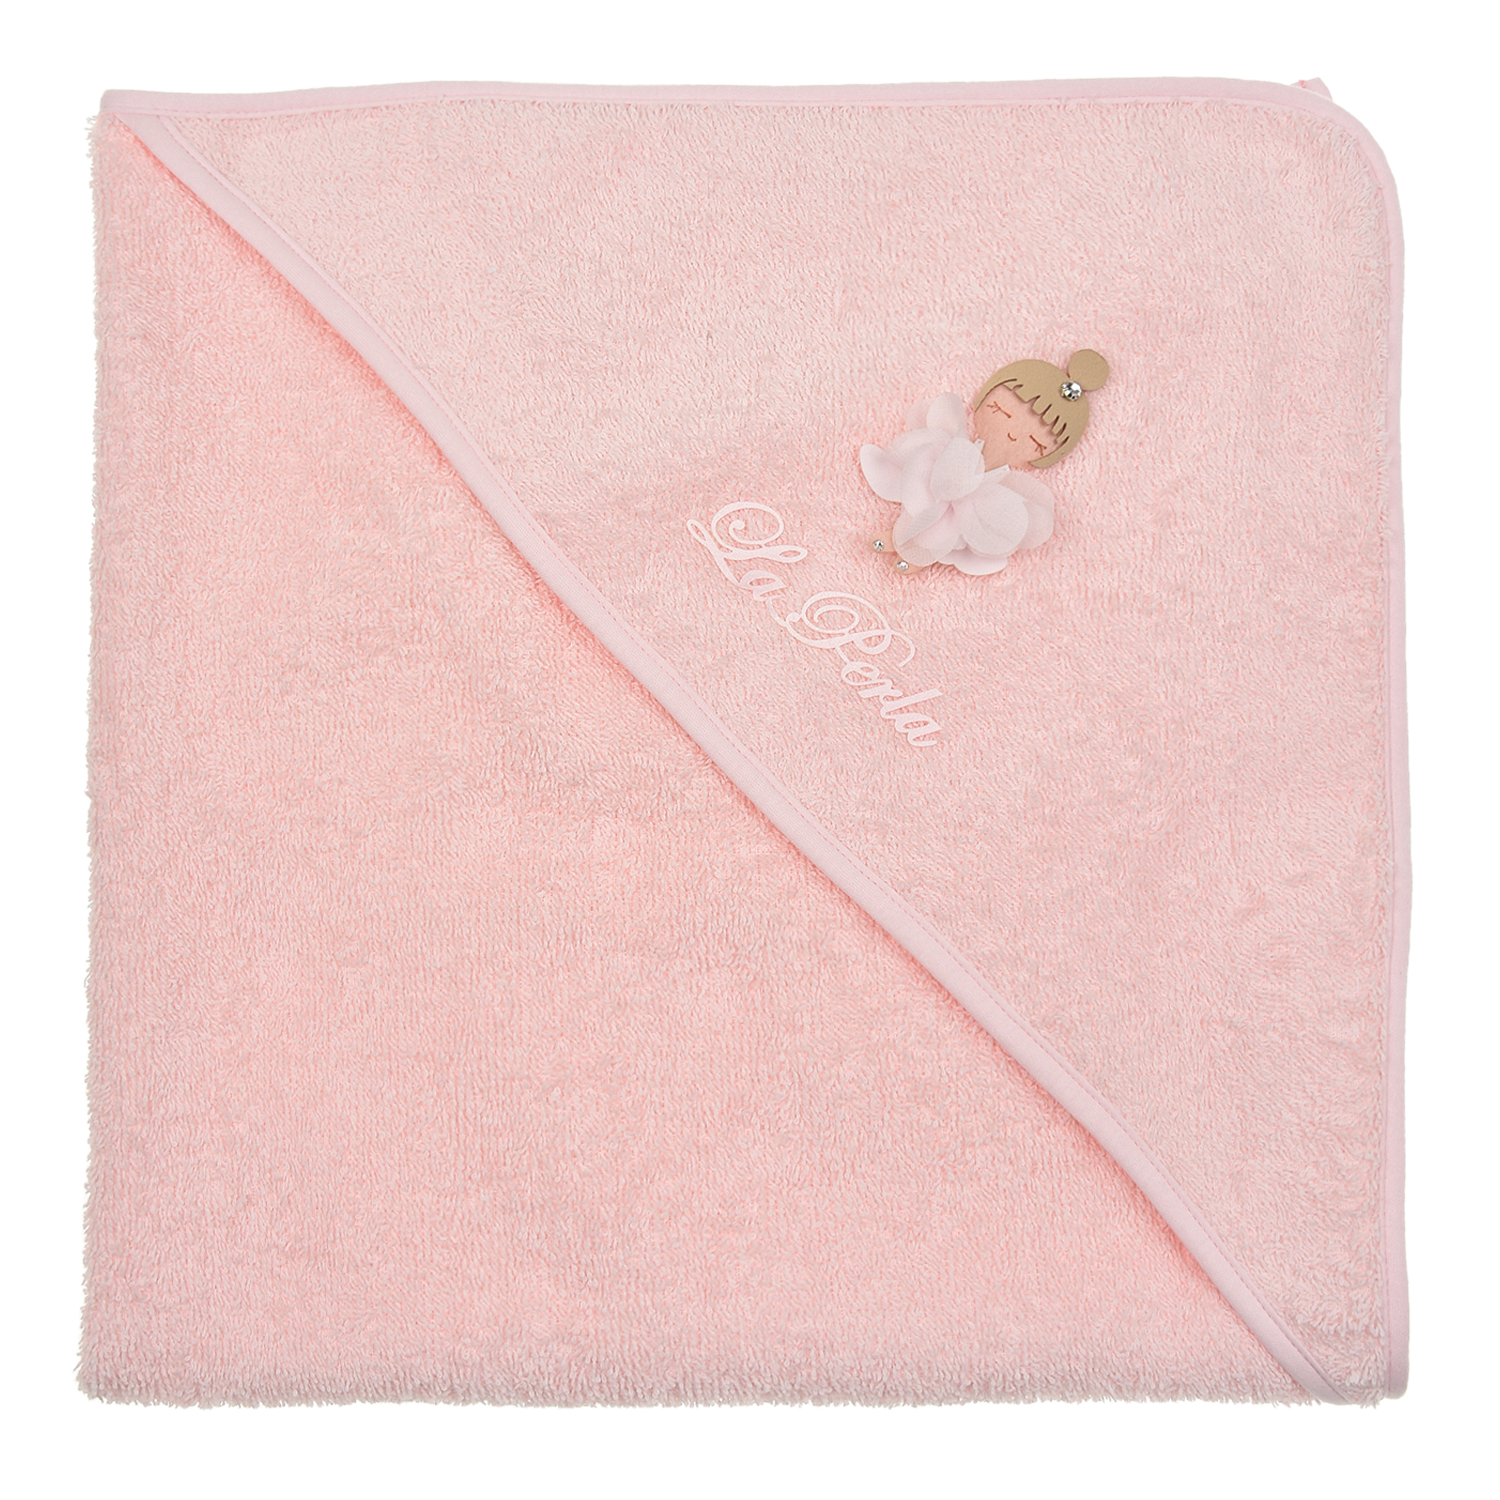 Розовое полотенце с аппликацией "Балерина", 65x65 см La Perla детское, размер unica, цвет розовый - фото 2